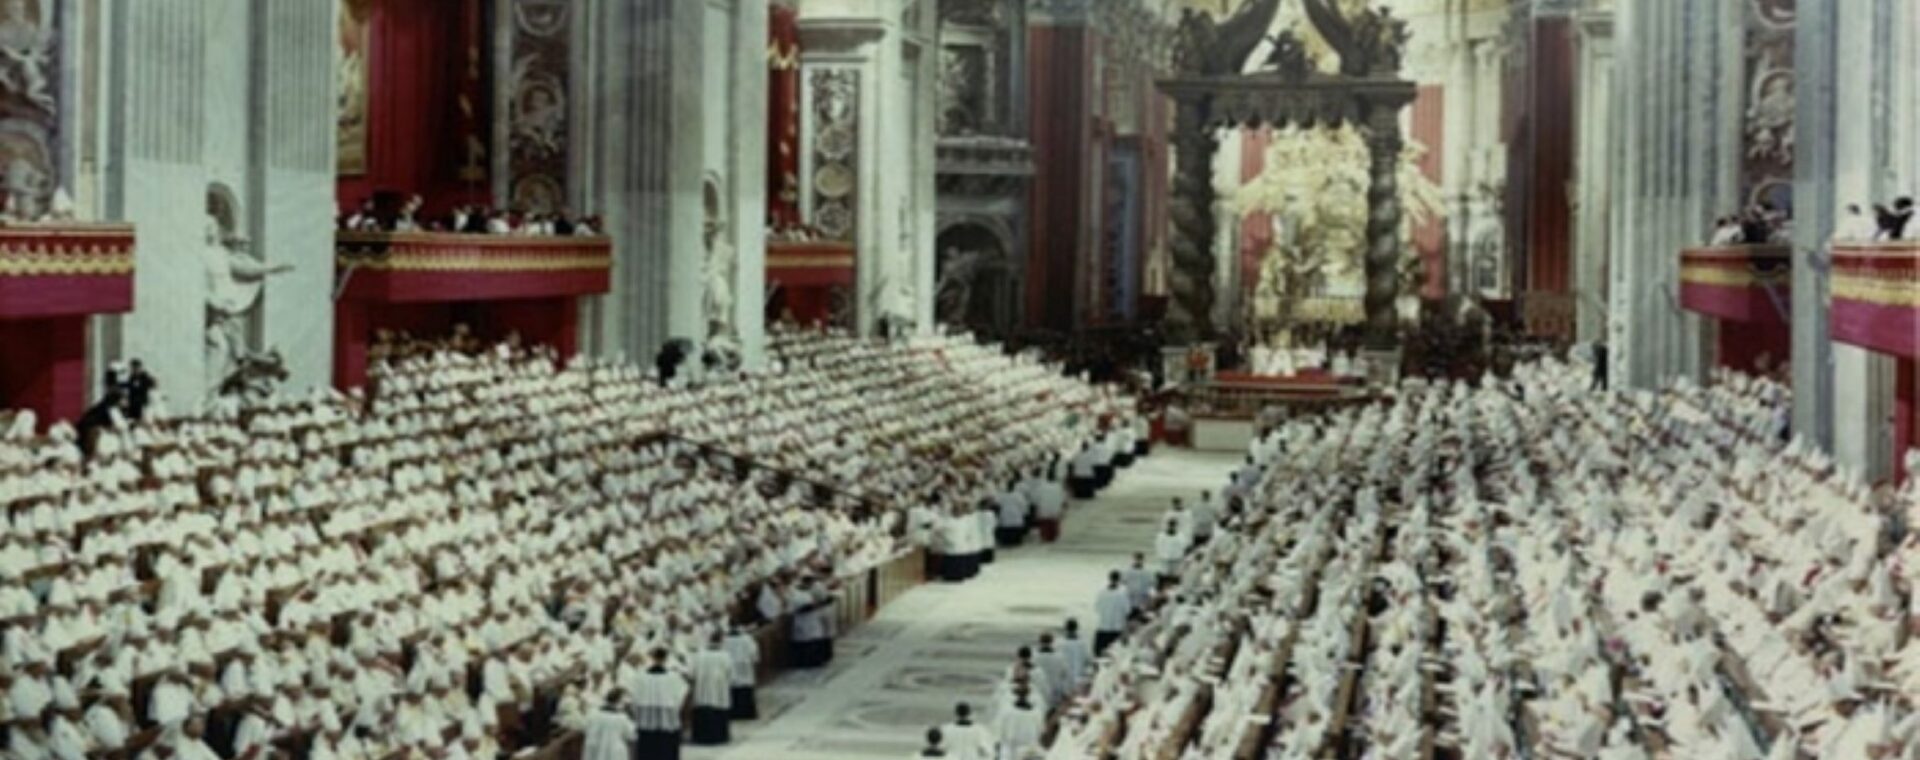 Šest desetiletí od zahájení 2. vatikánského koncilu